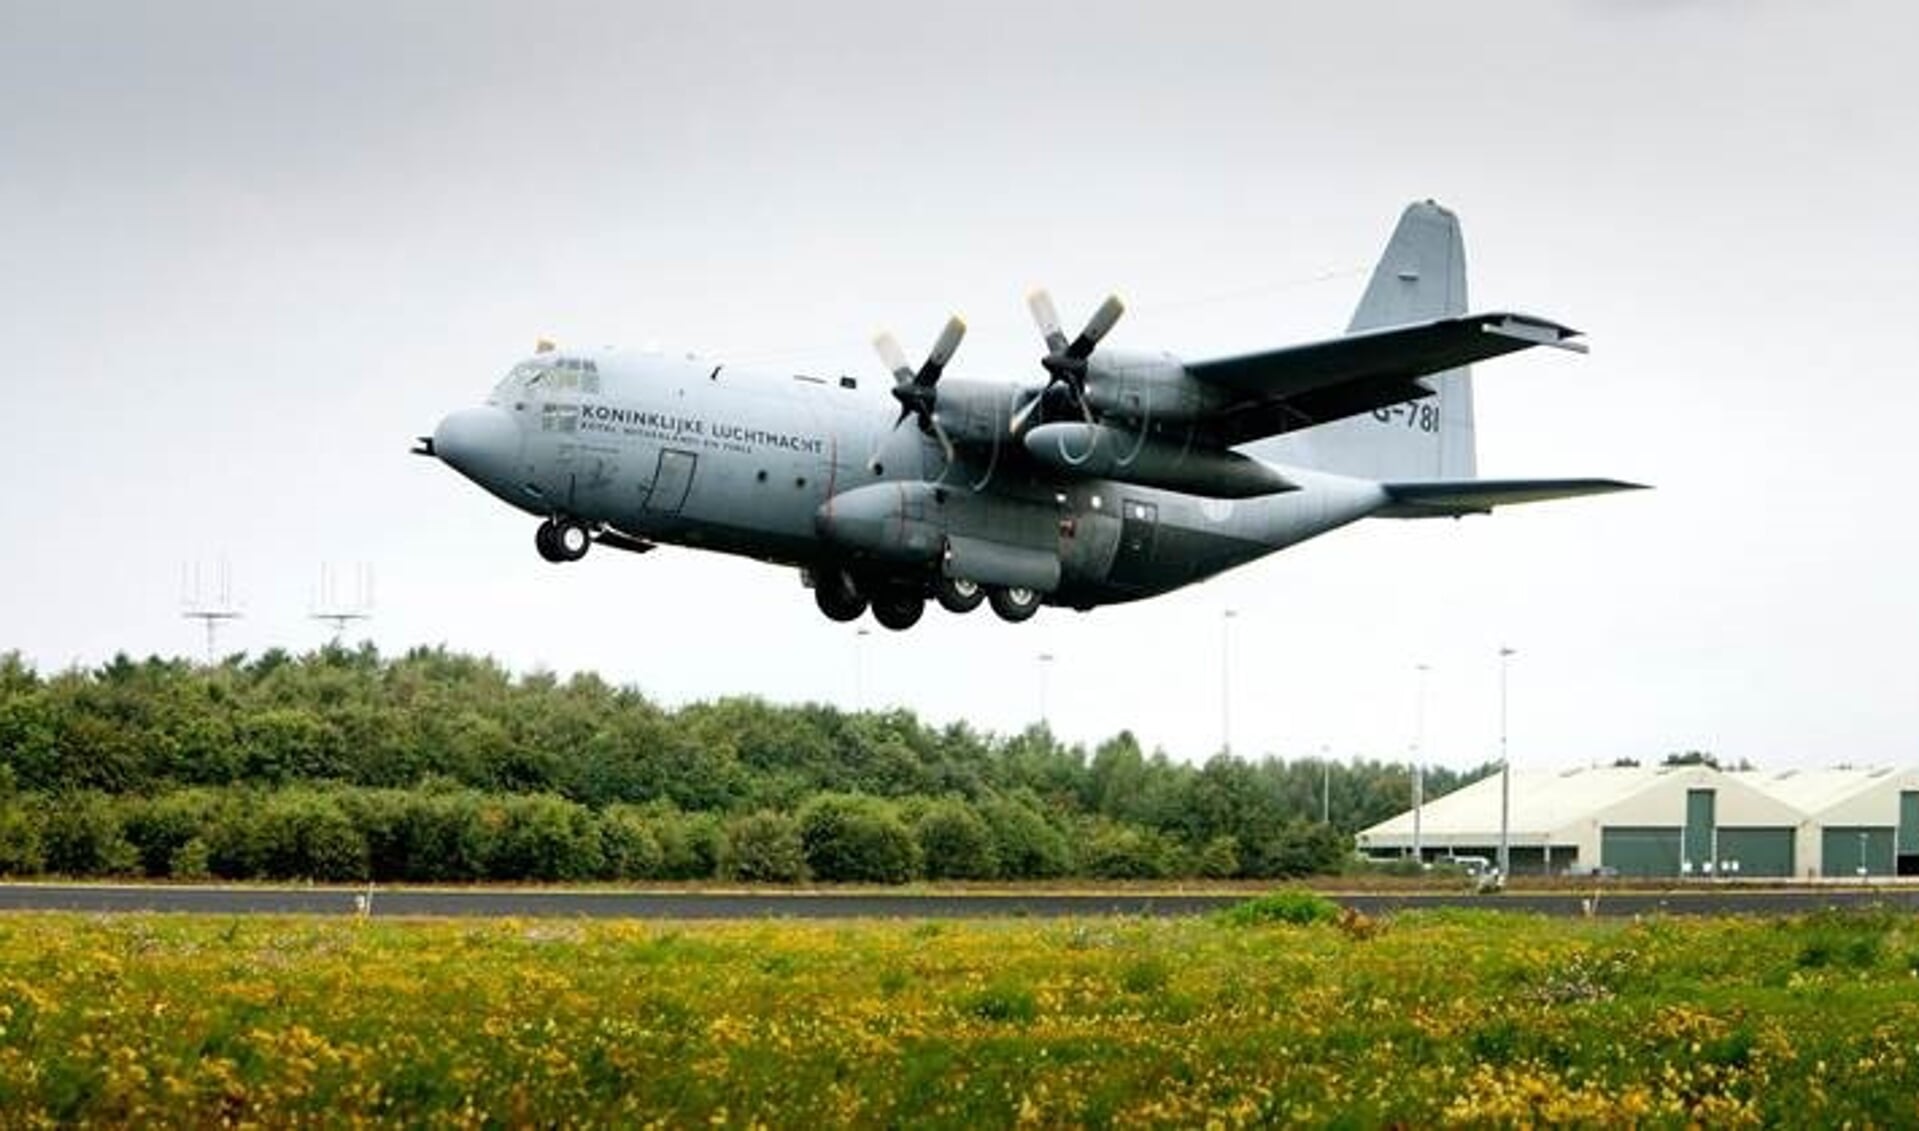 Laag en snel landen C-130 op vliegbasis Eindhoven